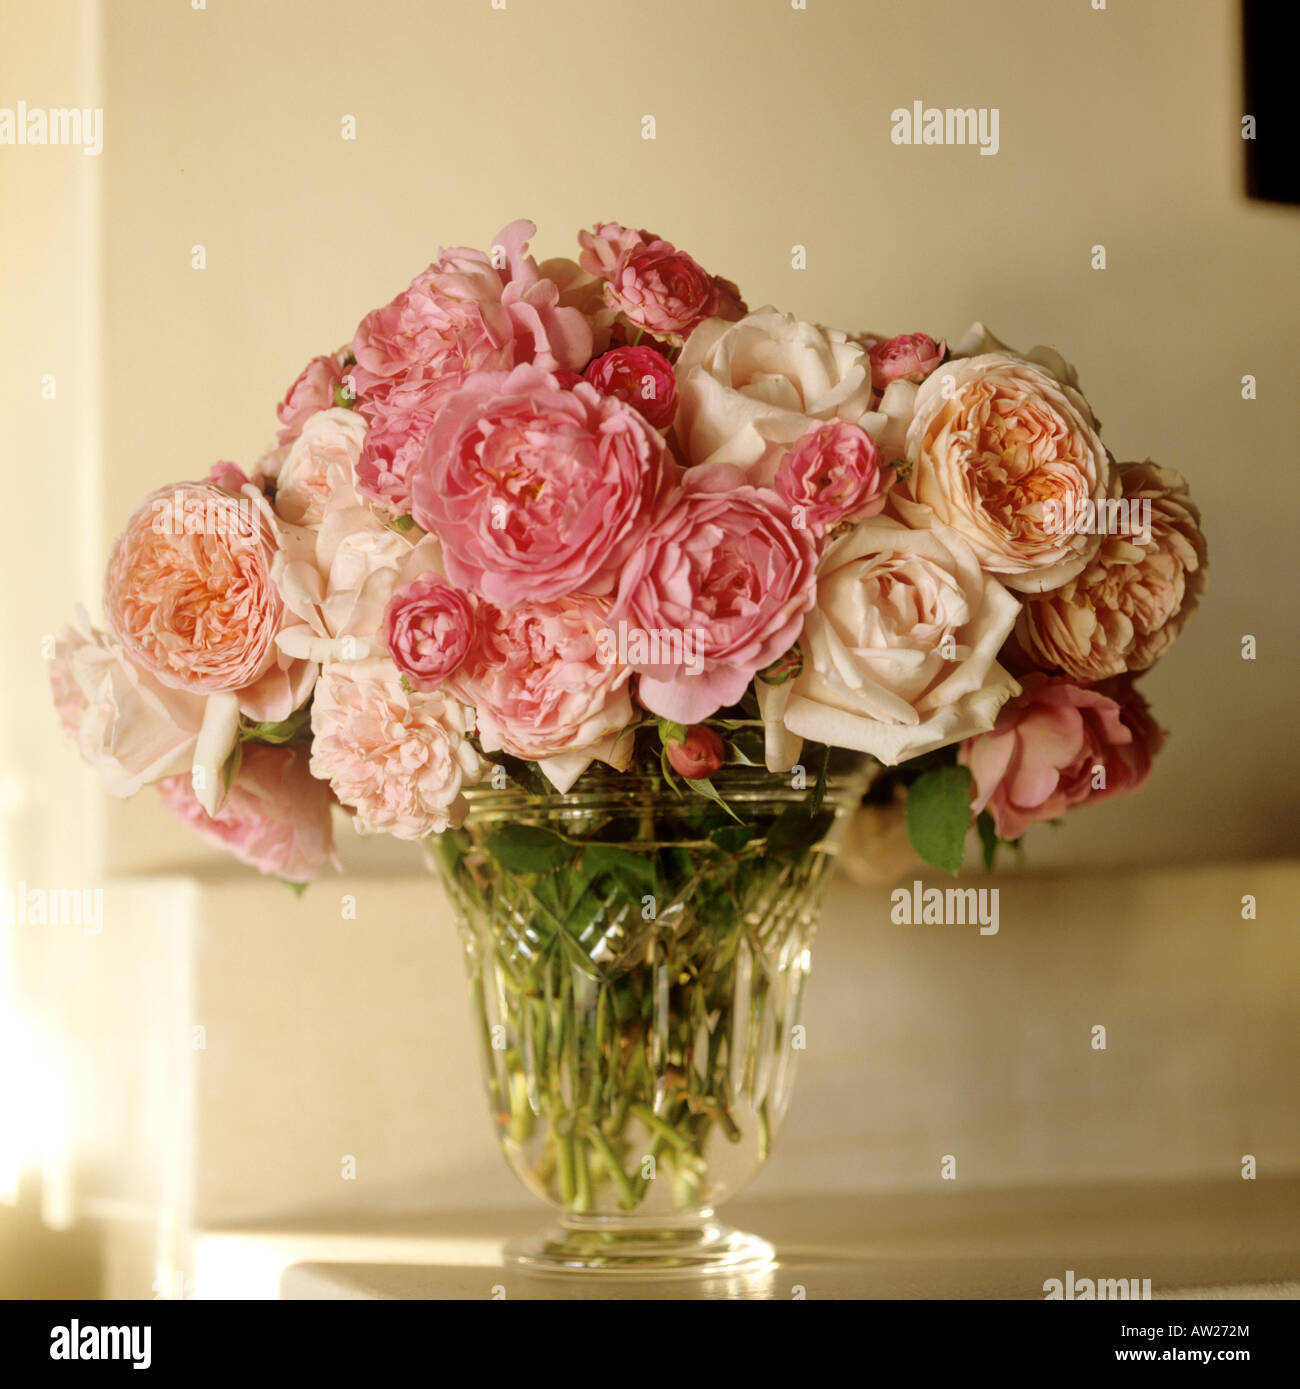 Glasvase mit frisch geschnittenen Rosen in verschiedenen Rosatönen Stockfoto